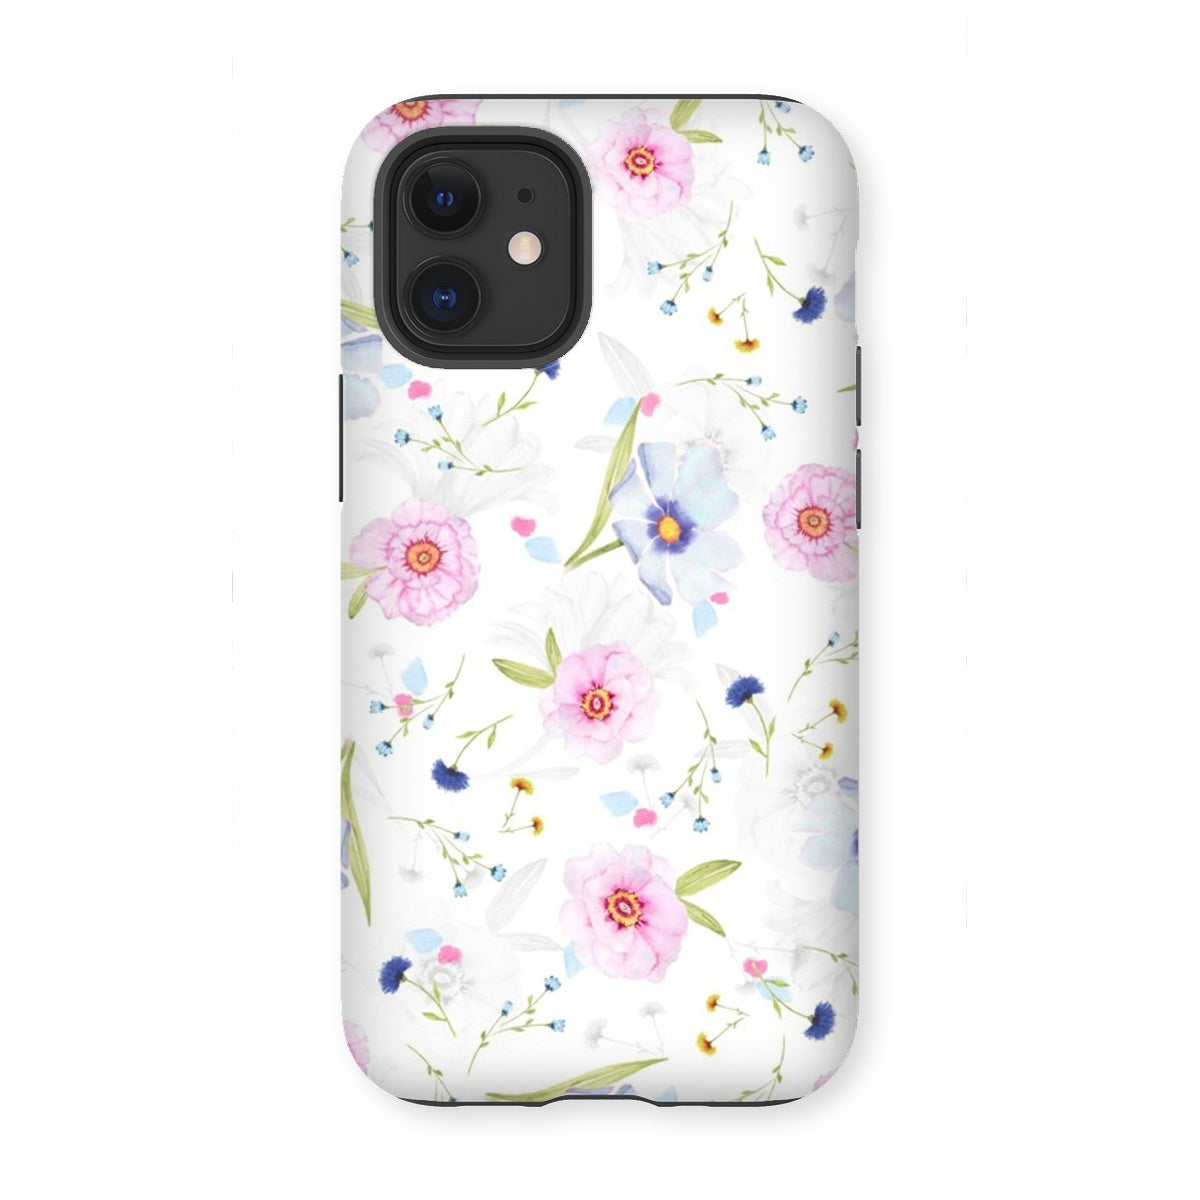 FlowerBG Tough Phone Case